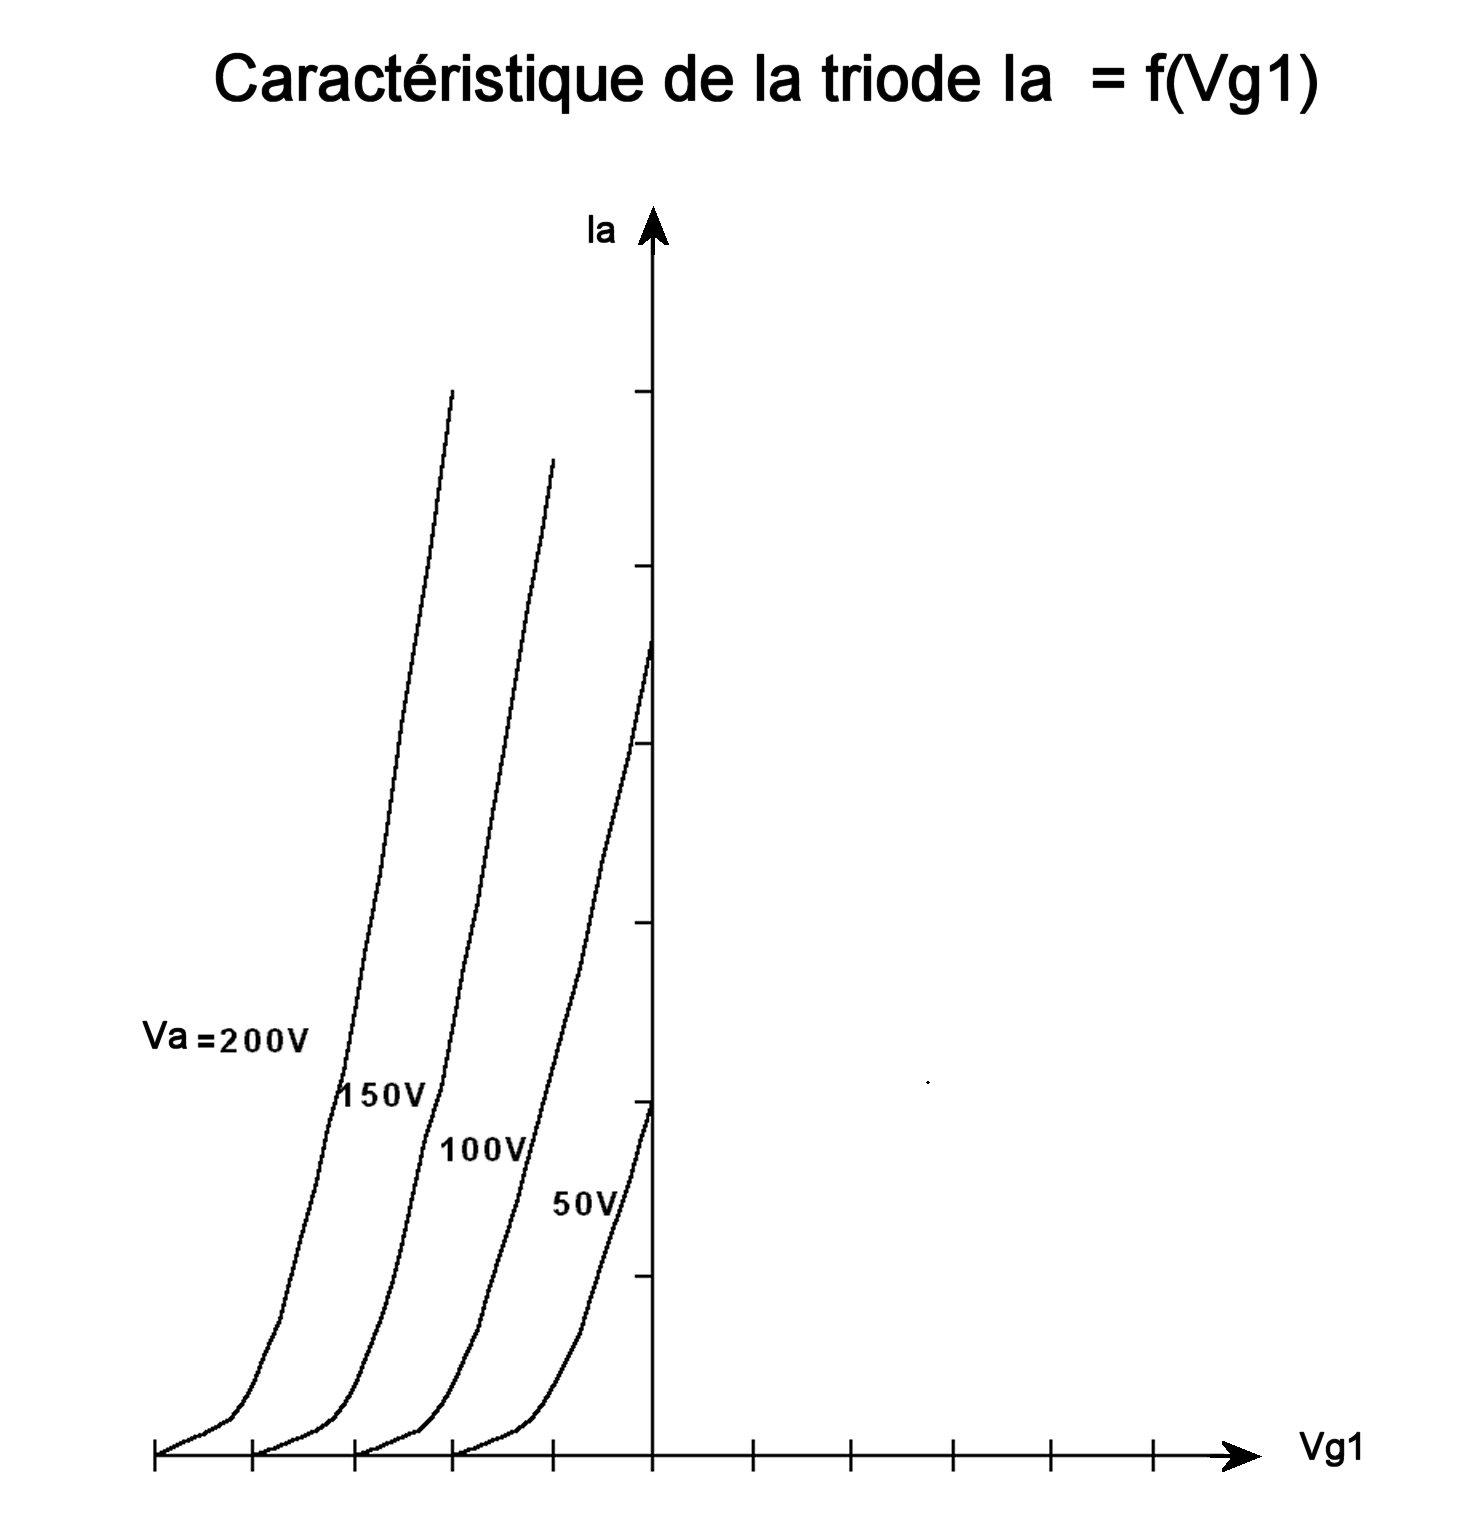 Figure 38 triode ia f vg1